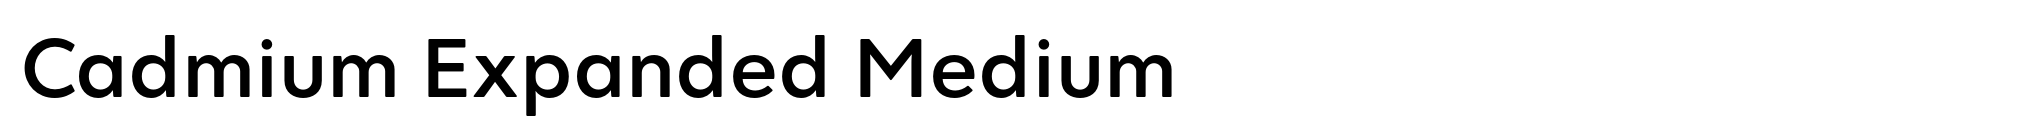 Cadmium Expanded Medium image